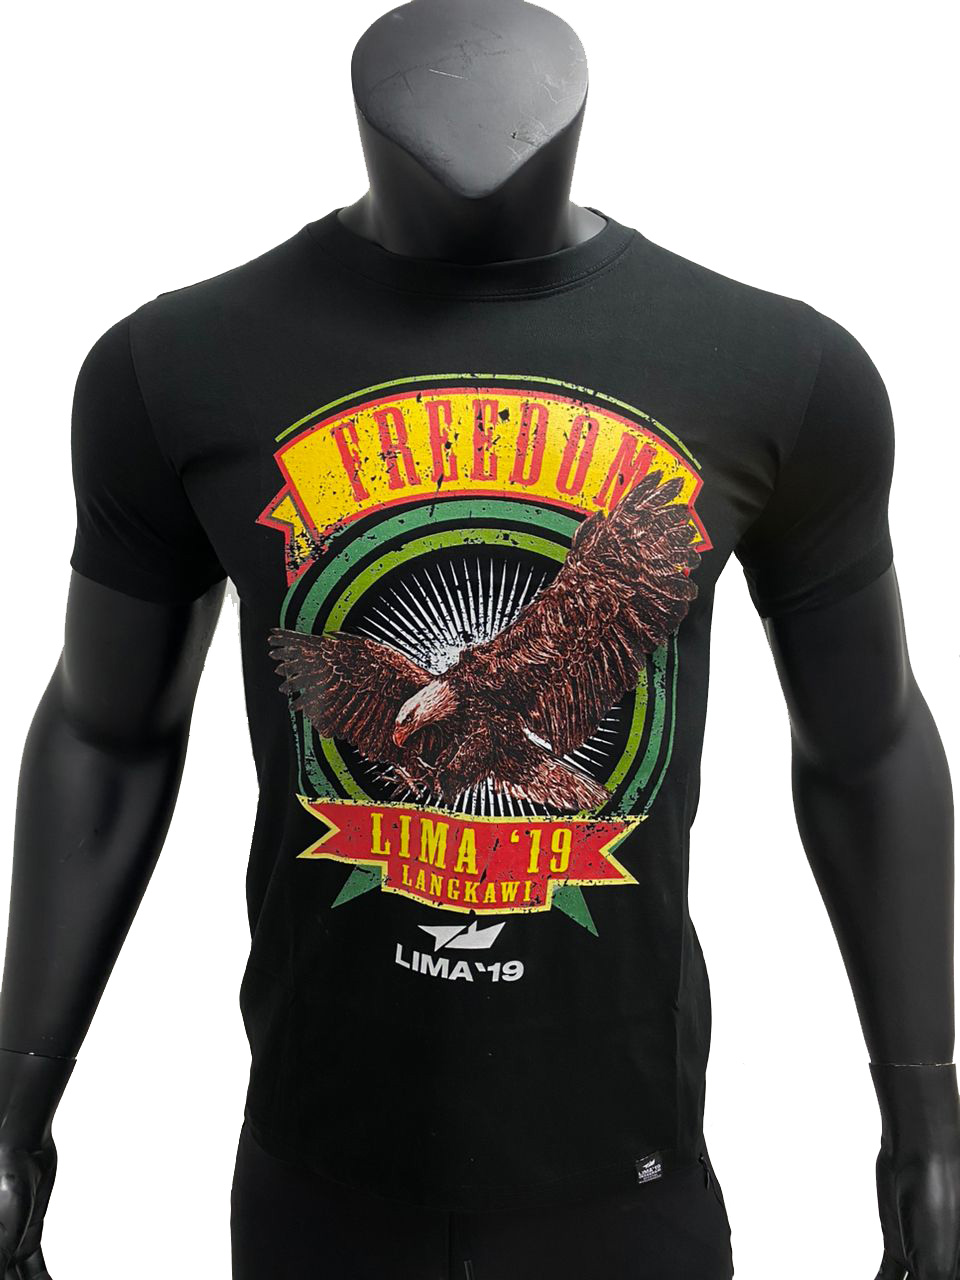 LIMA19 Langkawi freedom eagle baju tshirts